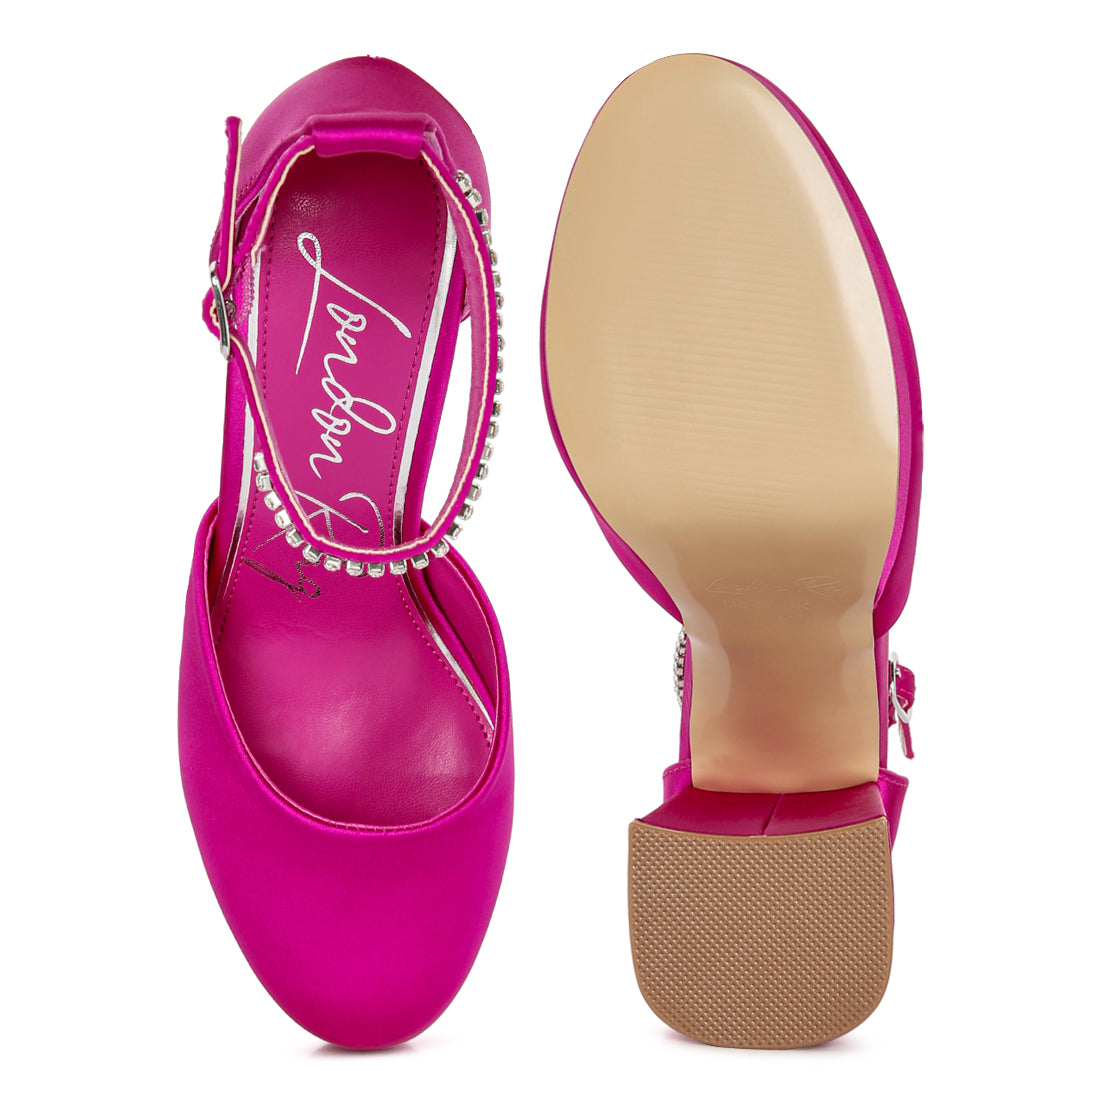 hettie mid heel sandals#color_pink